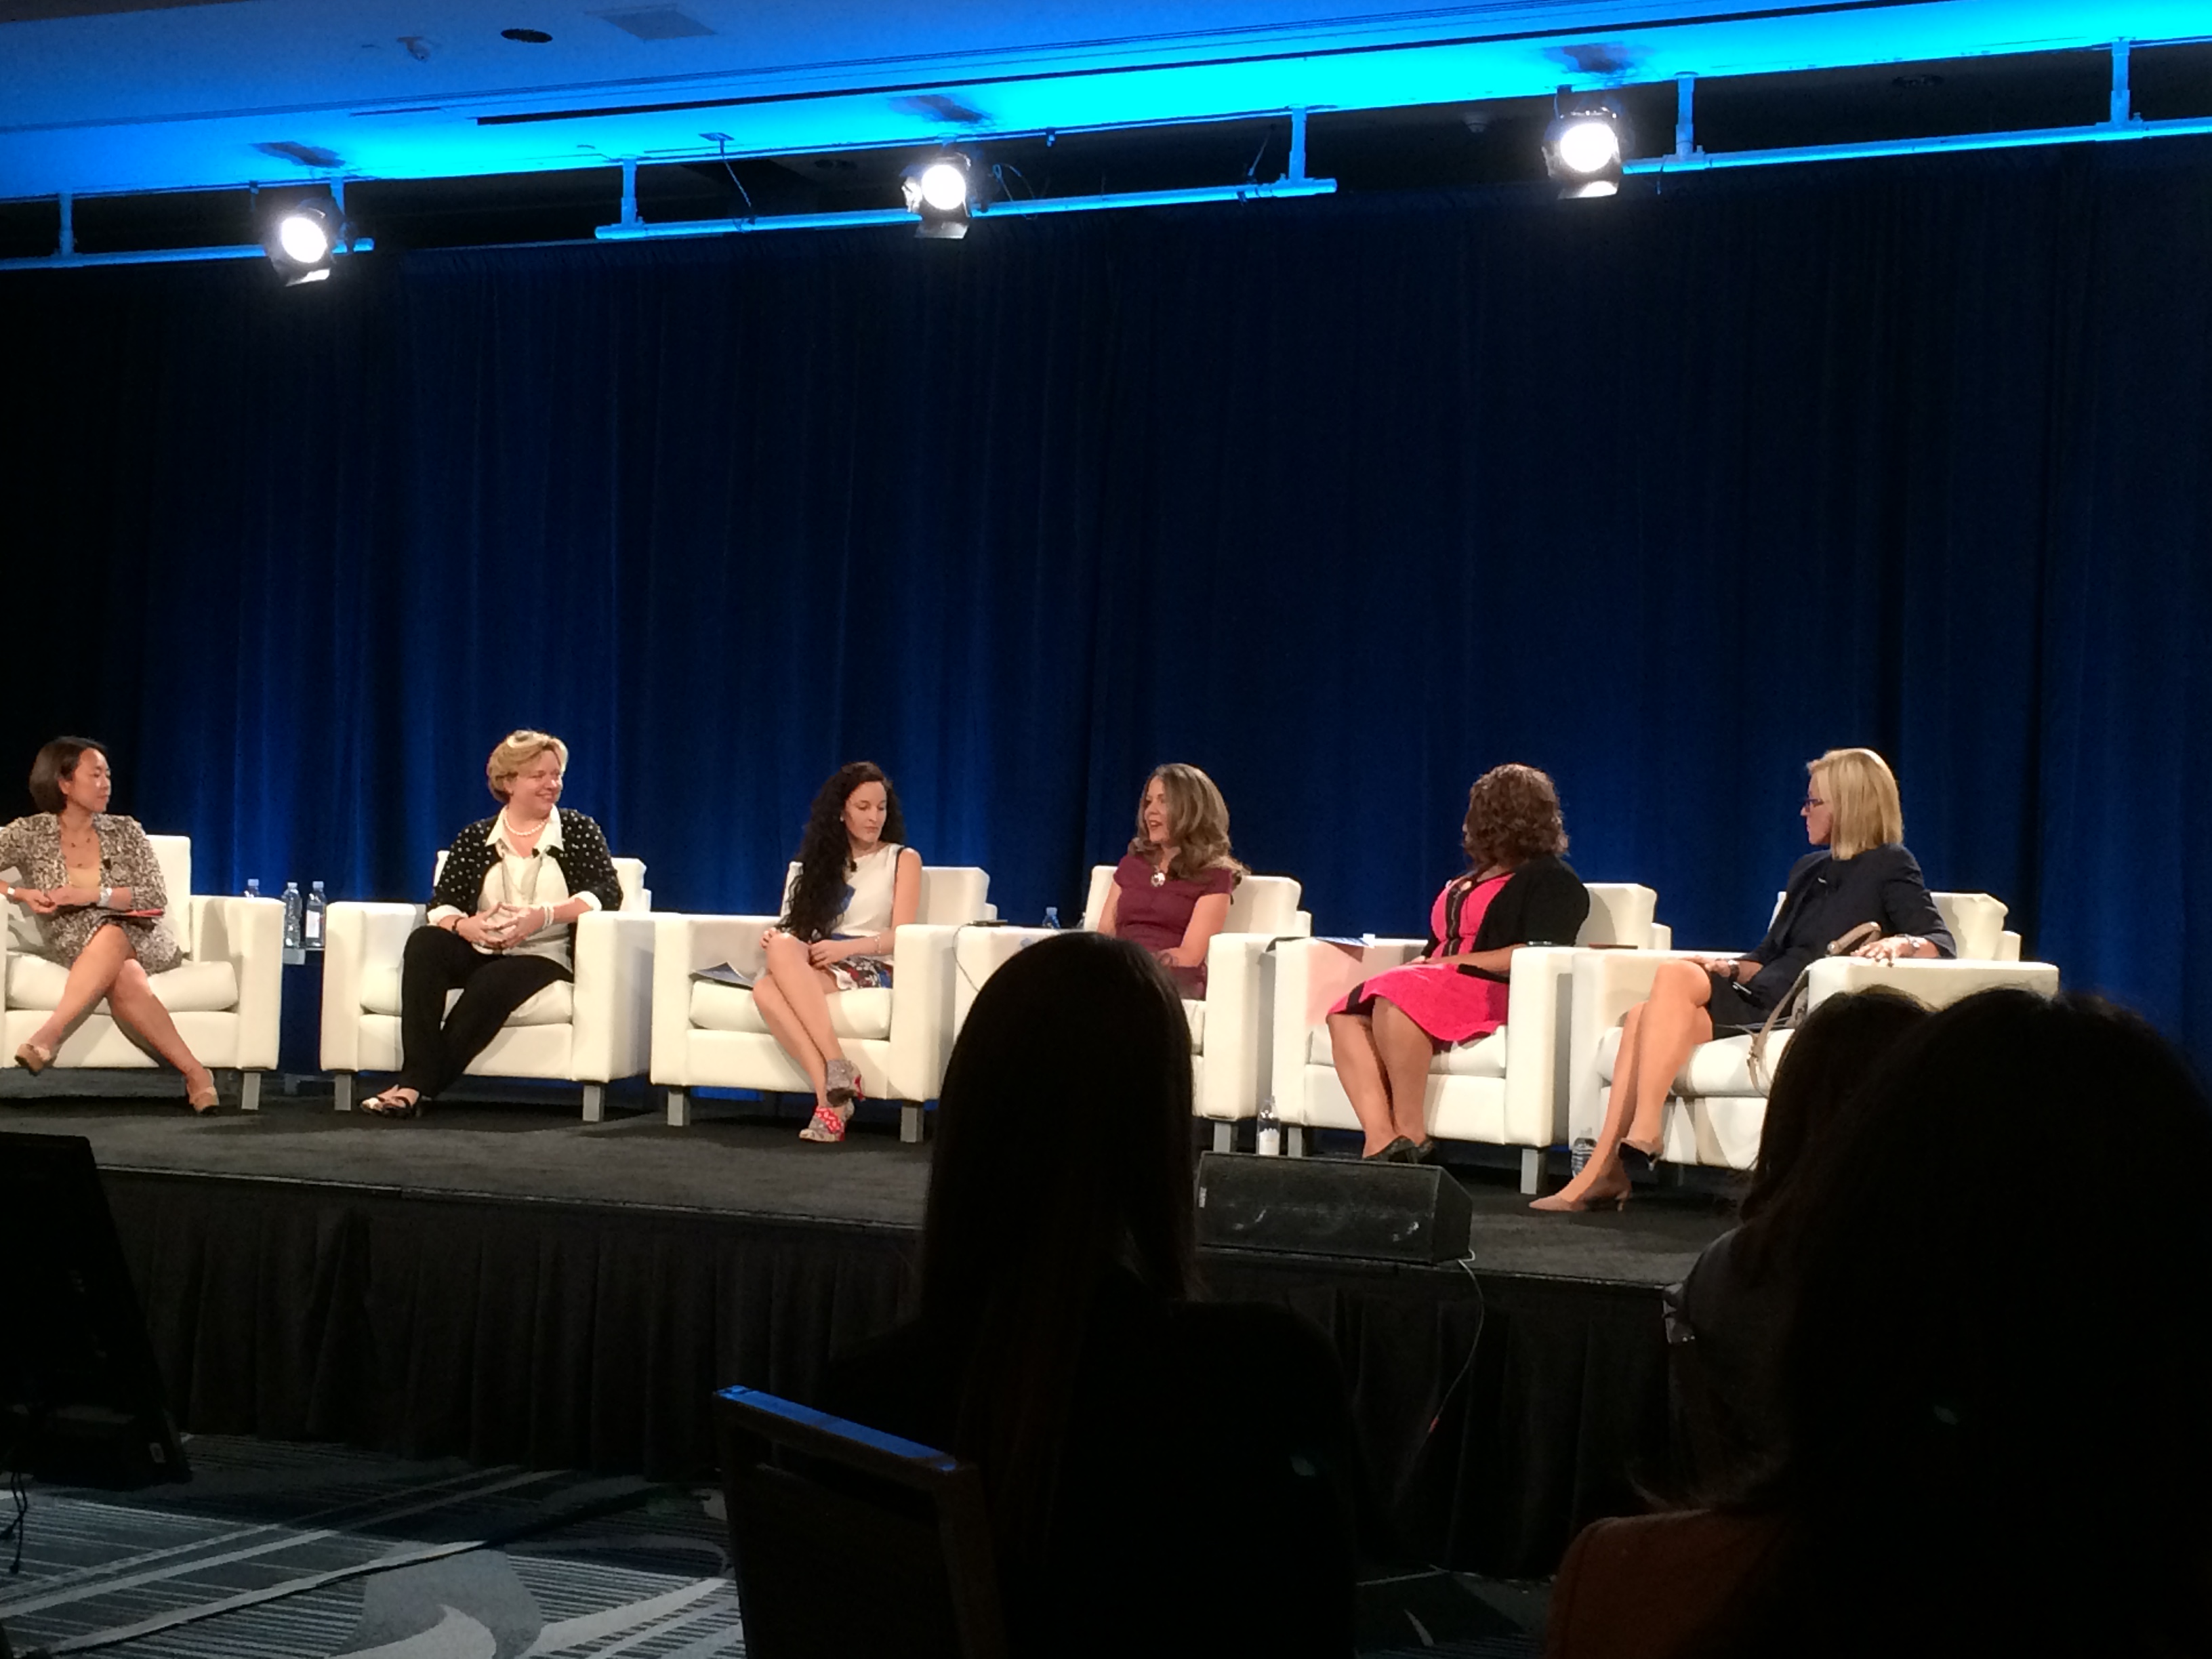 Dreamforce '14 Kicks Off with Women in Tech Panel